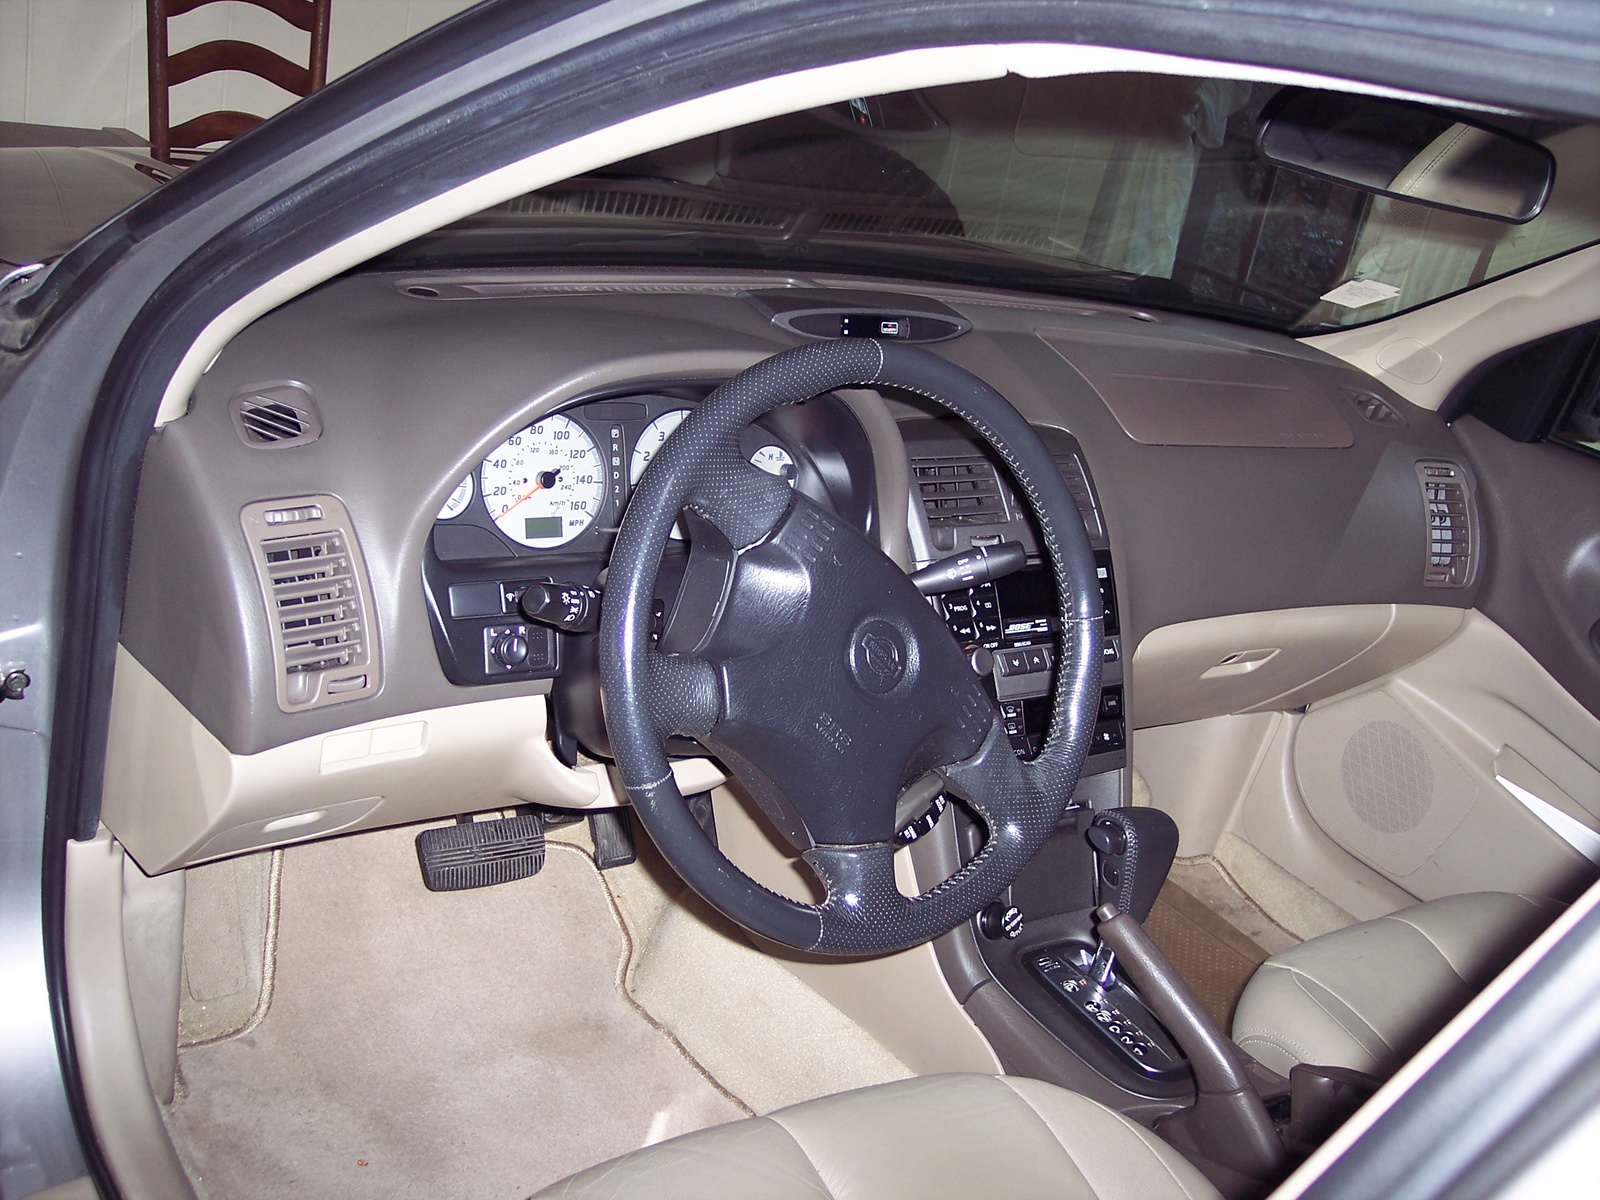 2000 Nissan maxima interior photos #4